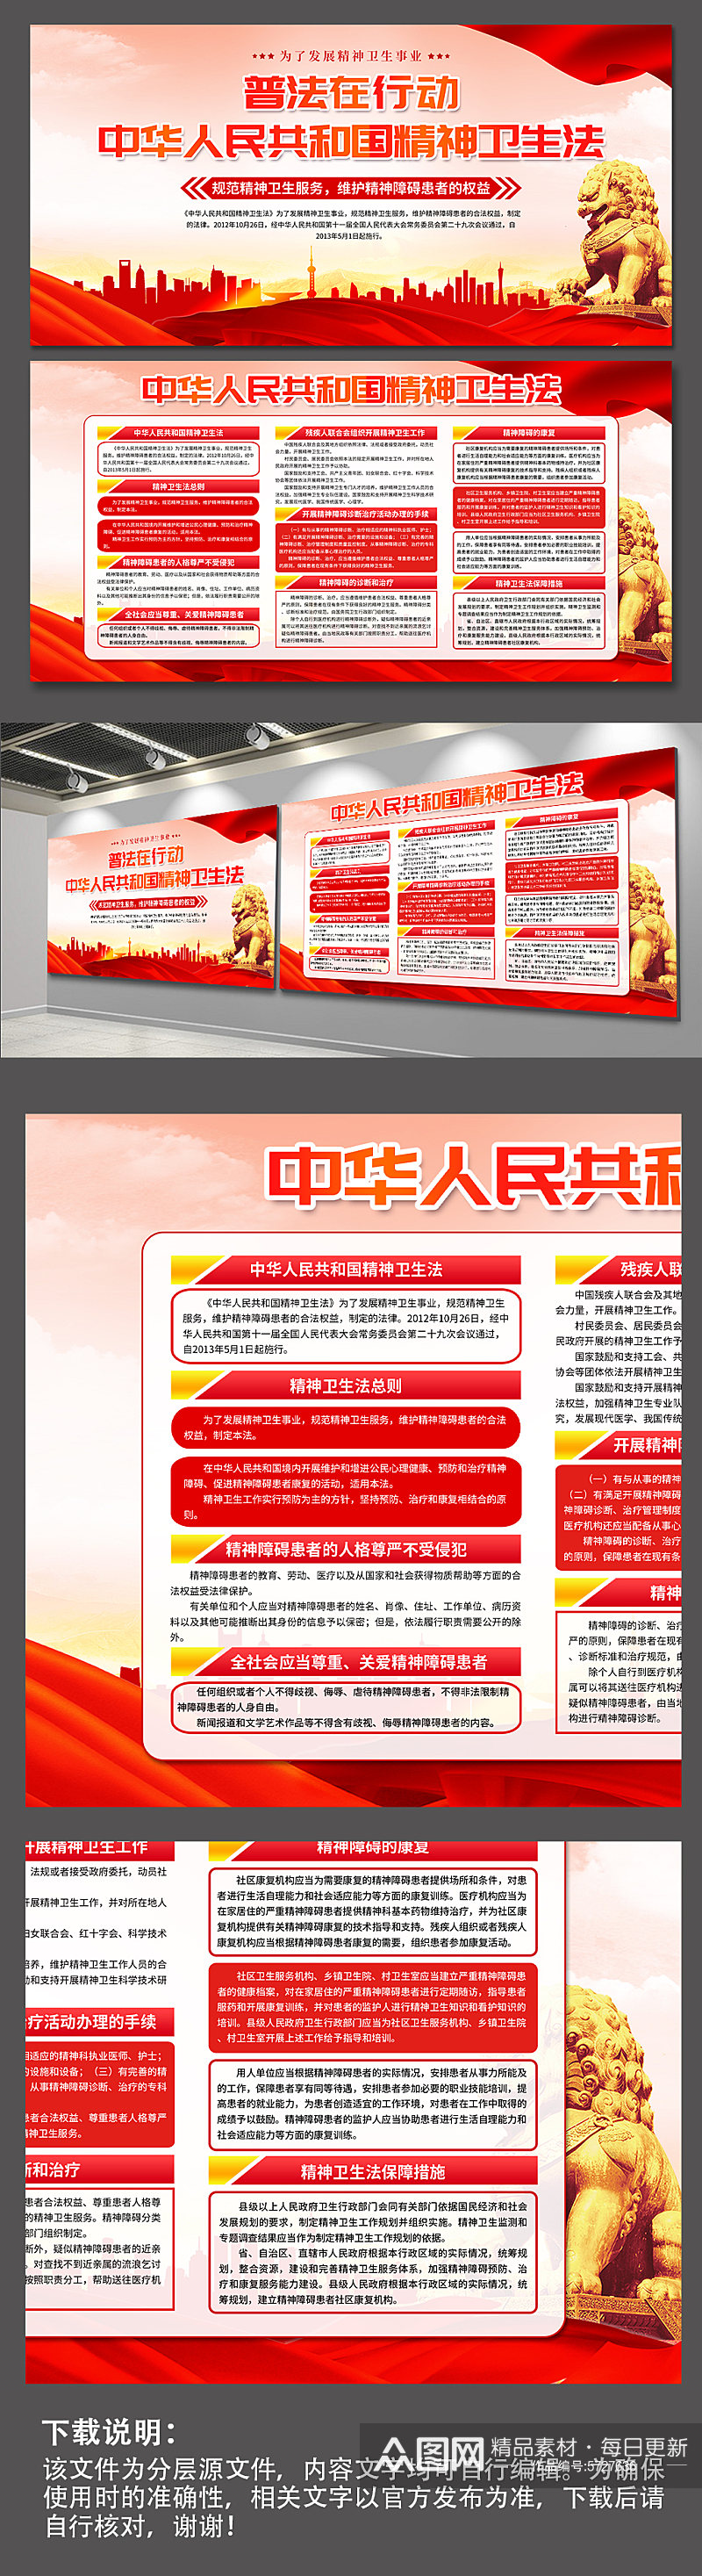 高档中华人民共和国精神卫生法党建展板素材